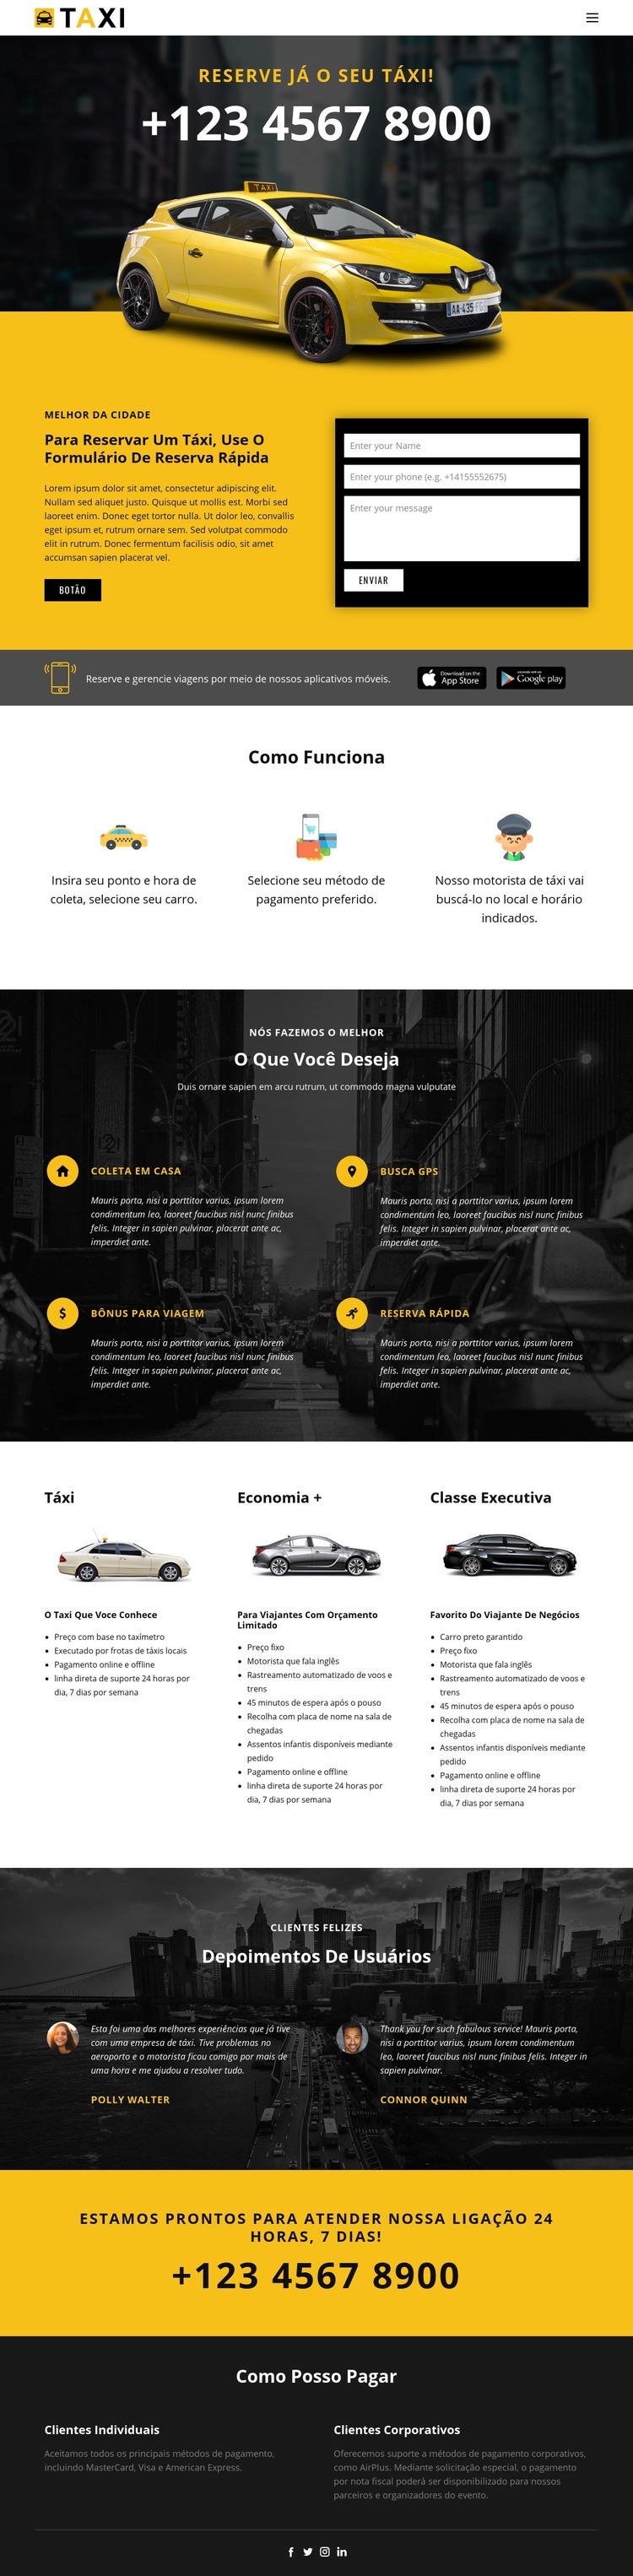 Carros táxi mais rápidos Modelo de uma página